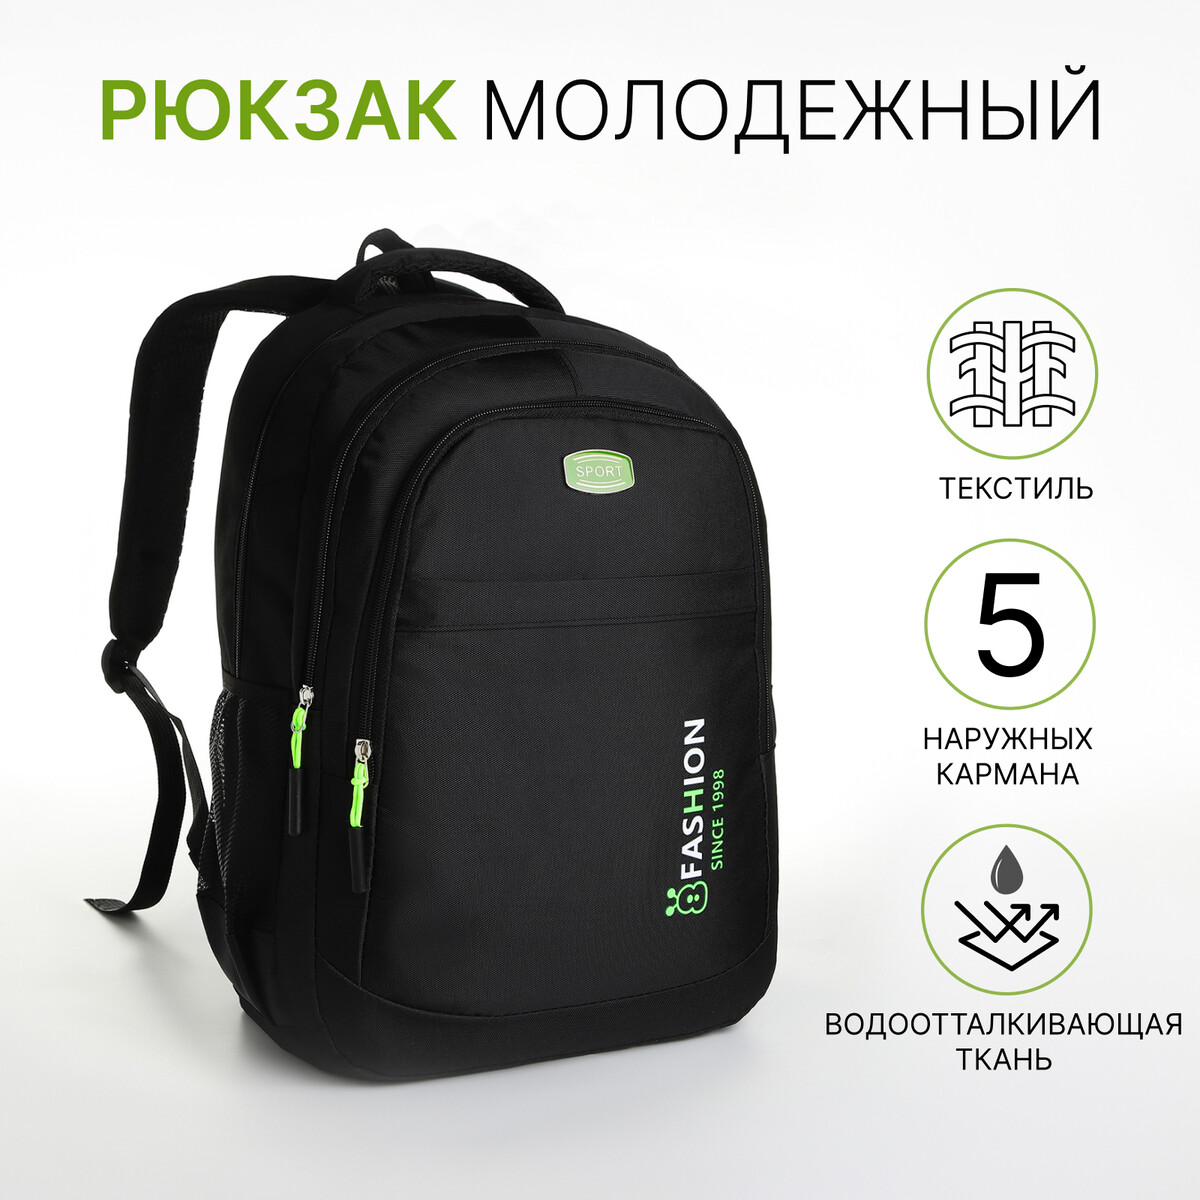 Рюкзак молодежный из текстиля на молнии, 5 карманов, цвет черный/зеленый рюкзак молодежный из текстиля на молнии 5 карманов зеленый